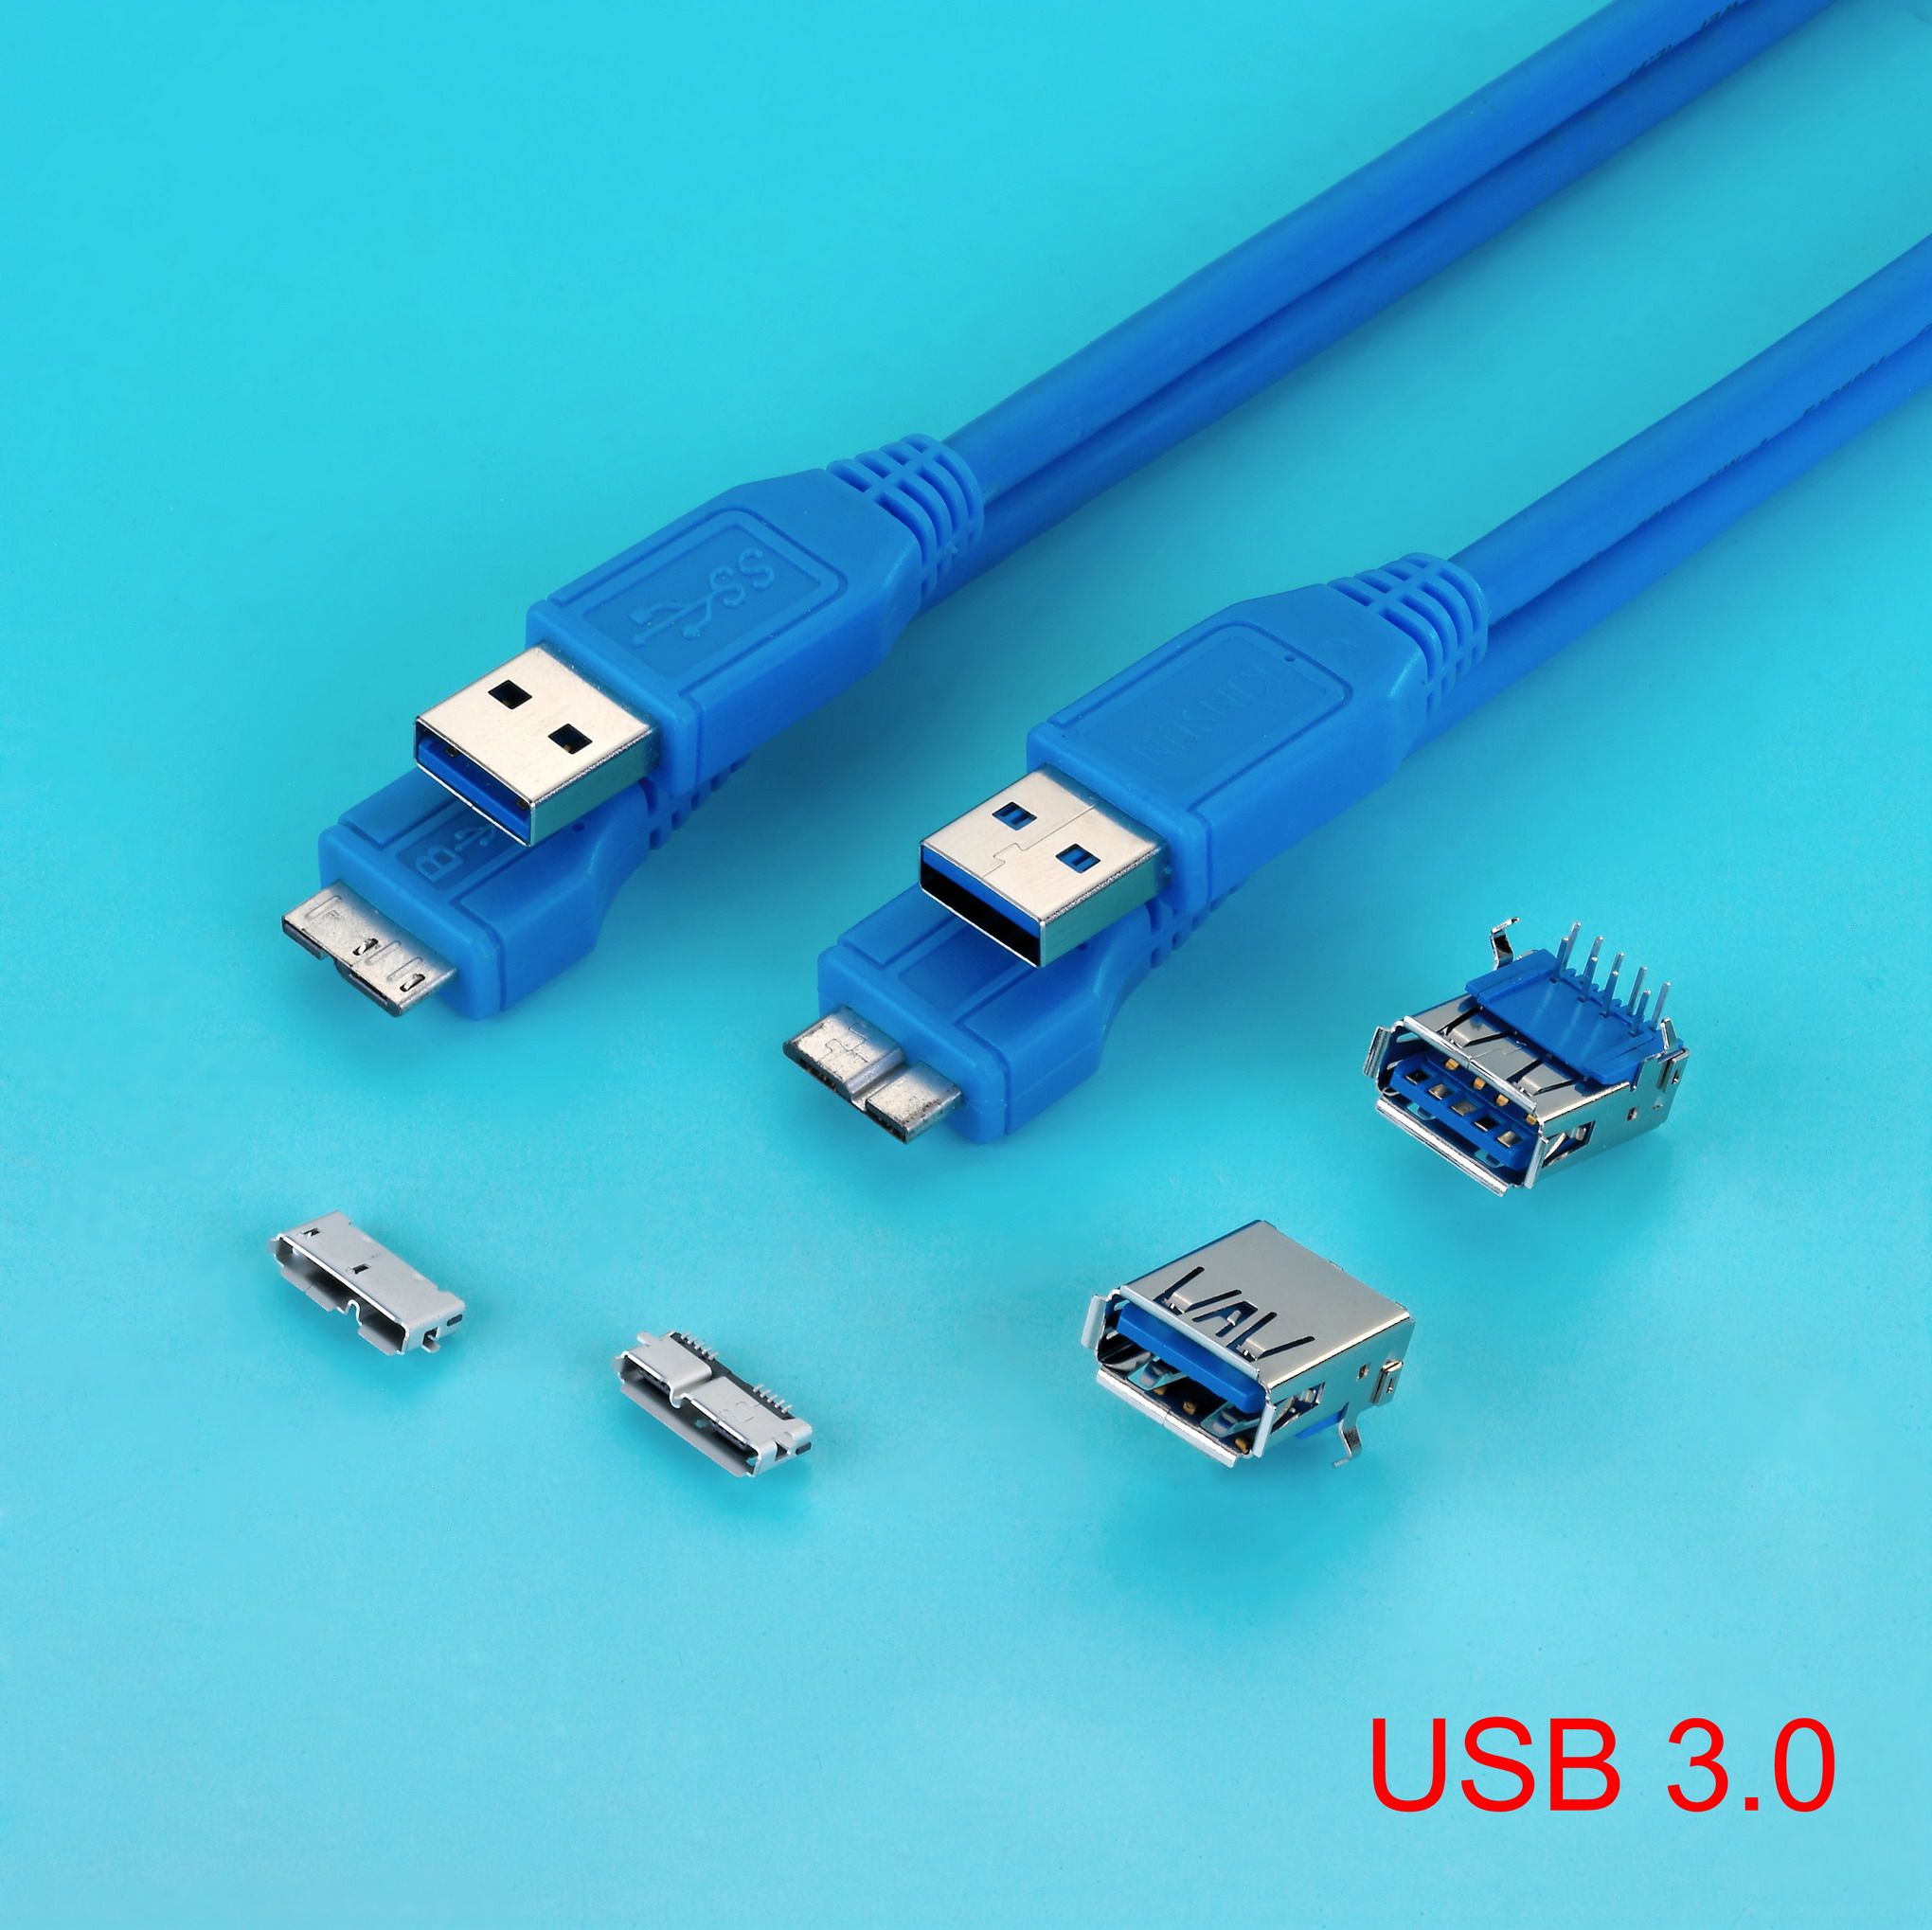 USB, Mini Fit, Pin Header, etc